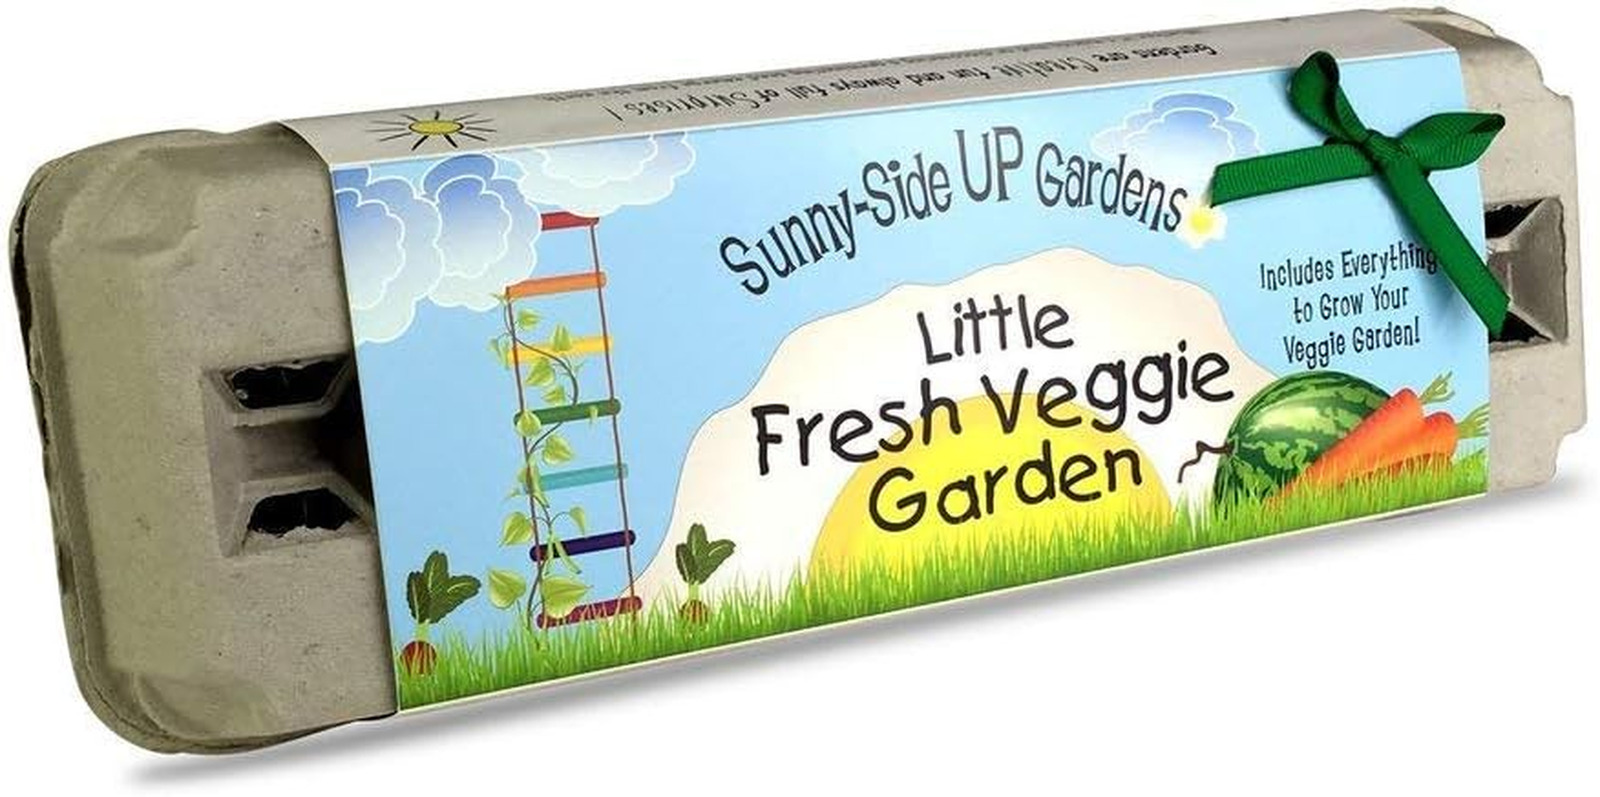 Company Sunny-Side up Gardens, Little Fresh Veggie Garden